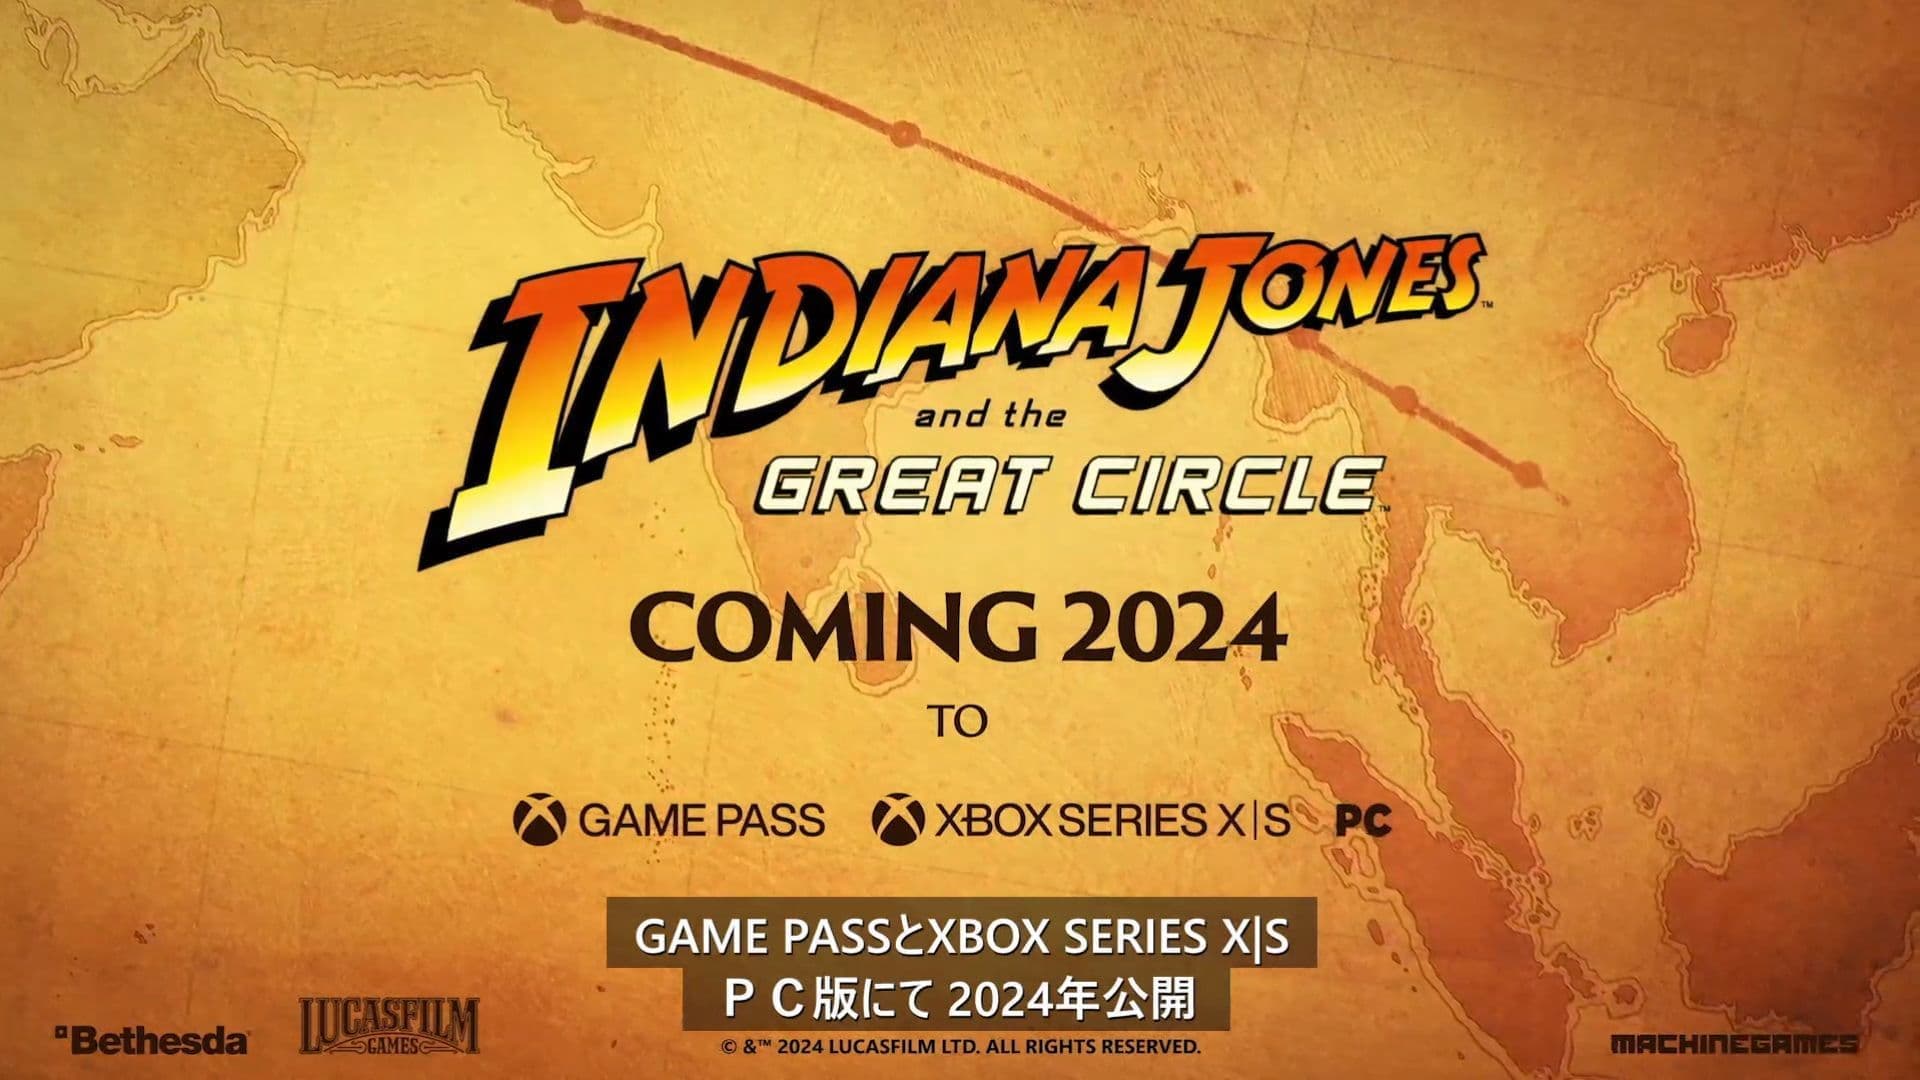 謎解きやスリルある冒険が描かれる『インディ・ジョーンズ』シリーズ最新作『インディ・ジョーンズ/大いなる円環』の最新映像が公開_001